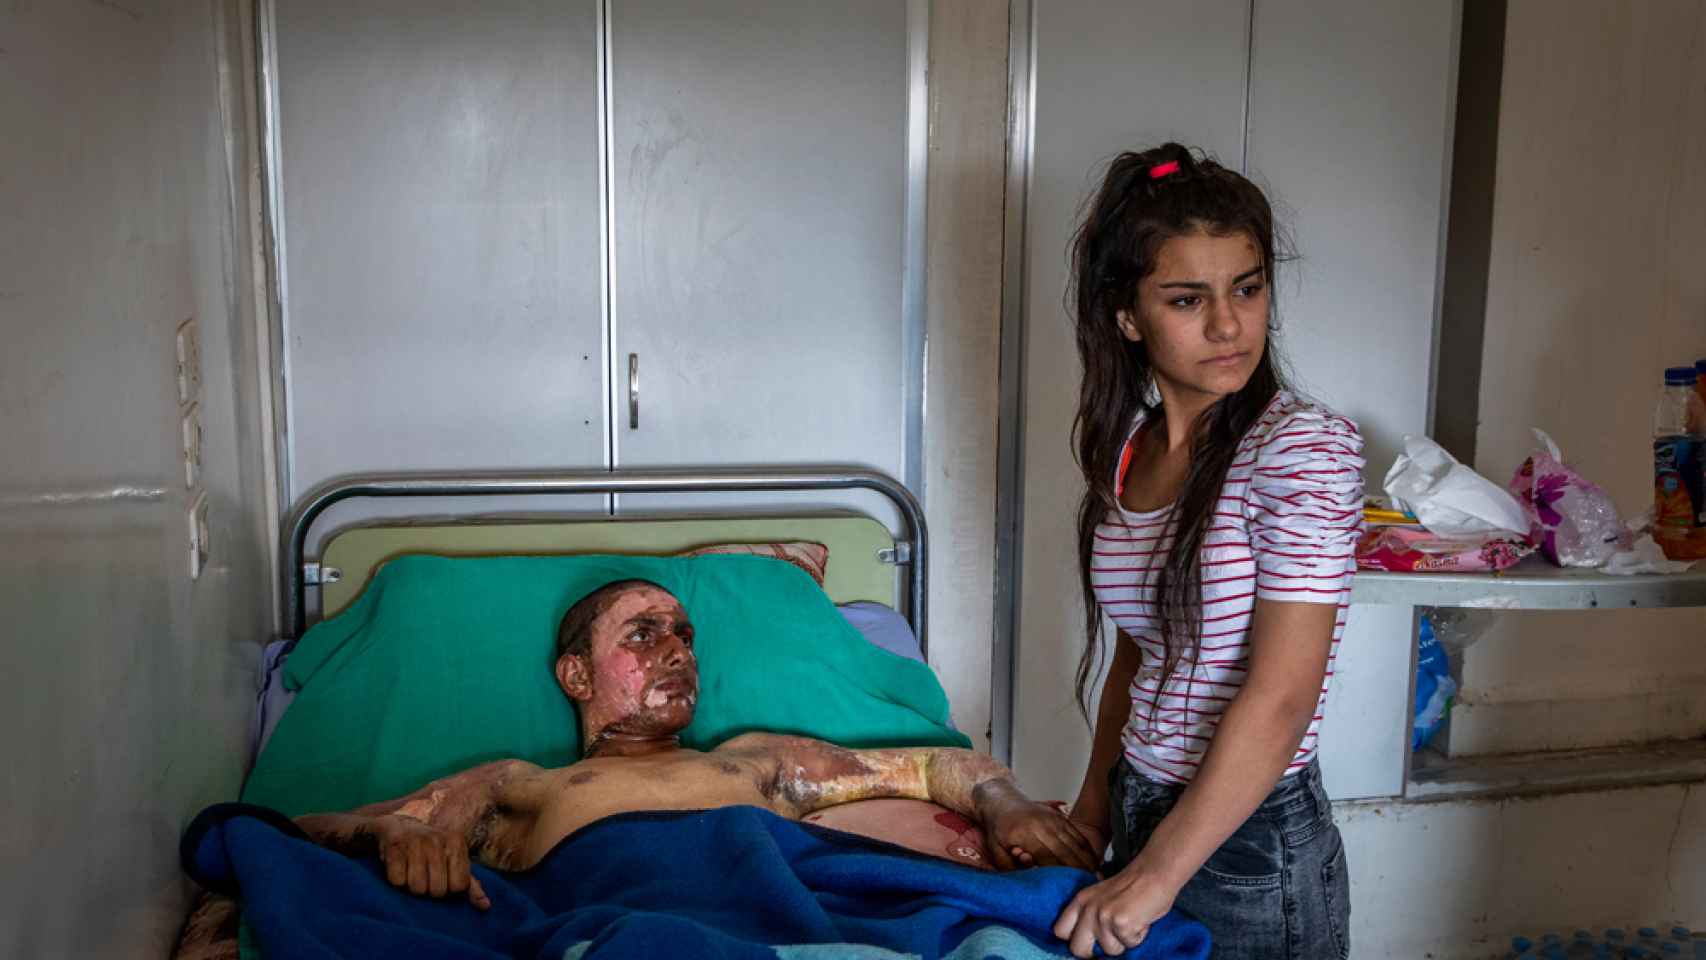 Ahmed Ibrahim de 18 años de las Fuerzas democráticas de Siria, gravemente quemado, recibe la visita de su novia en un hospital en Al-Hasakah (Siria), el 20 de octubre de 2019. © Ivor Prickett, Irlanda, para The New York Times